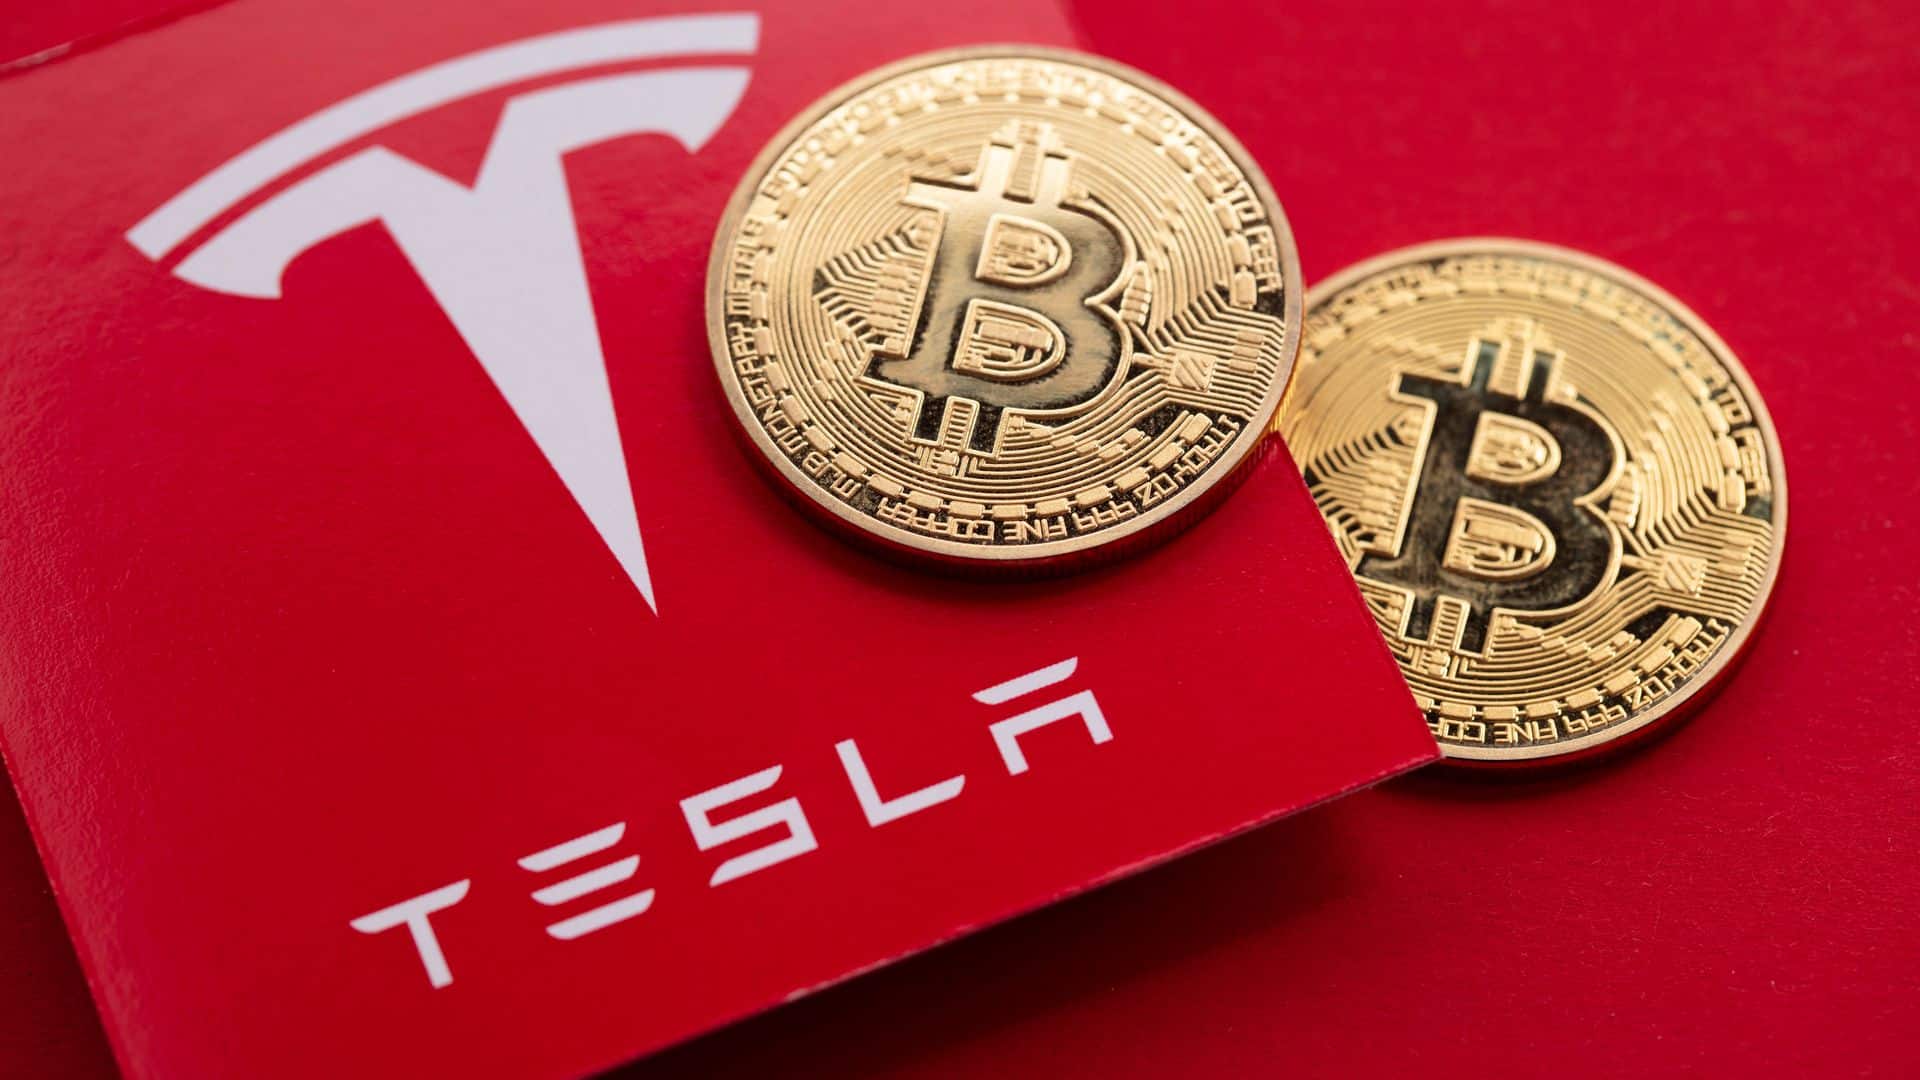 Tesla vende 75% de toda sua reserva de Bitcoin por quase US$ 1 bilhão